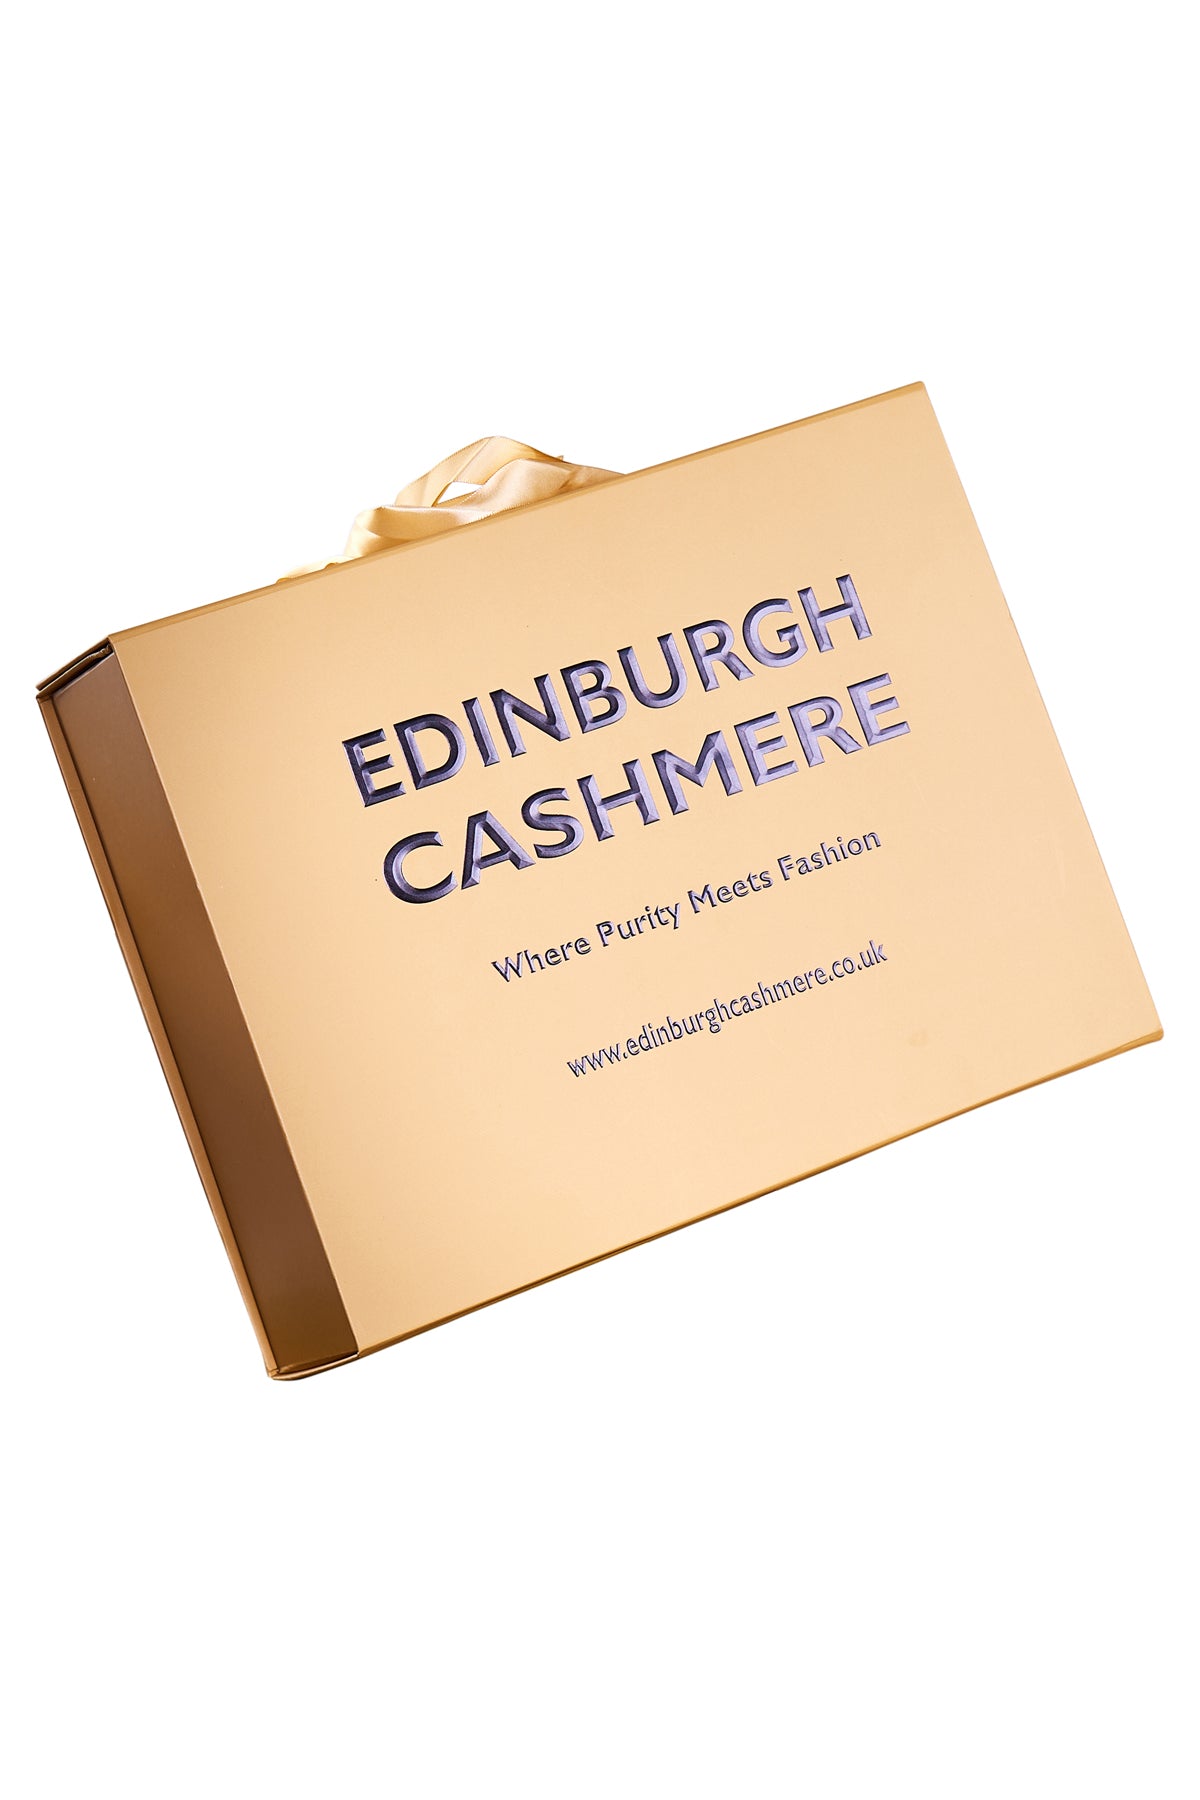 Cashmere Scarf Scottish Thomson Red Check Design